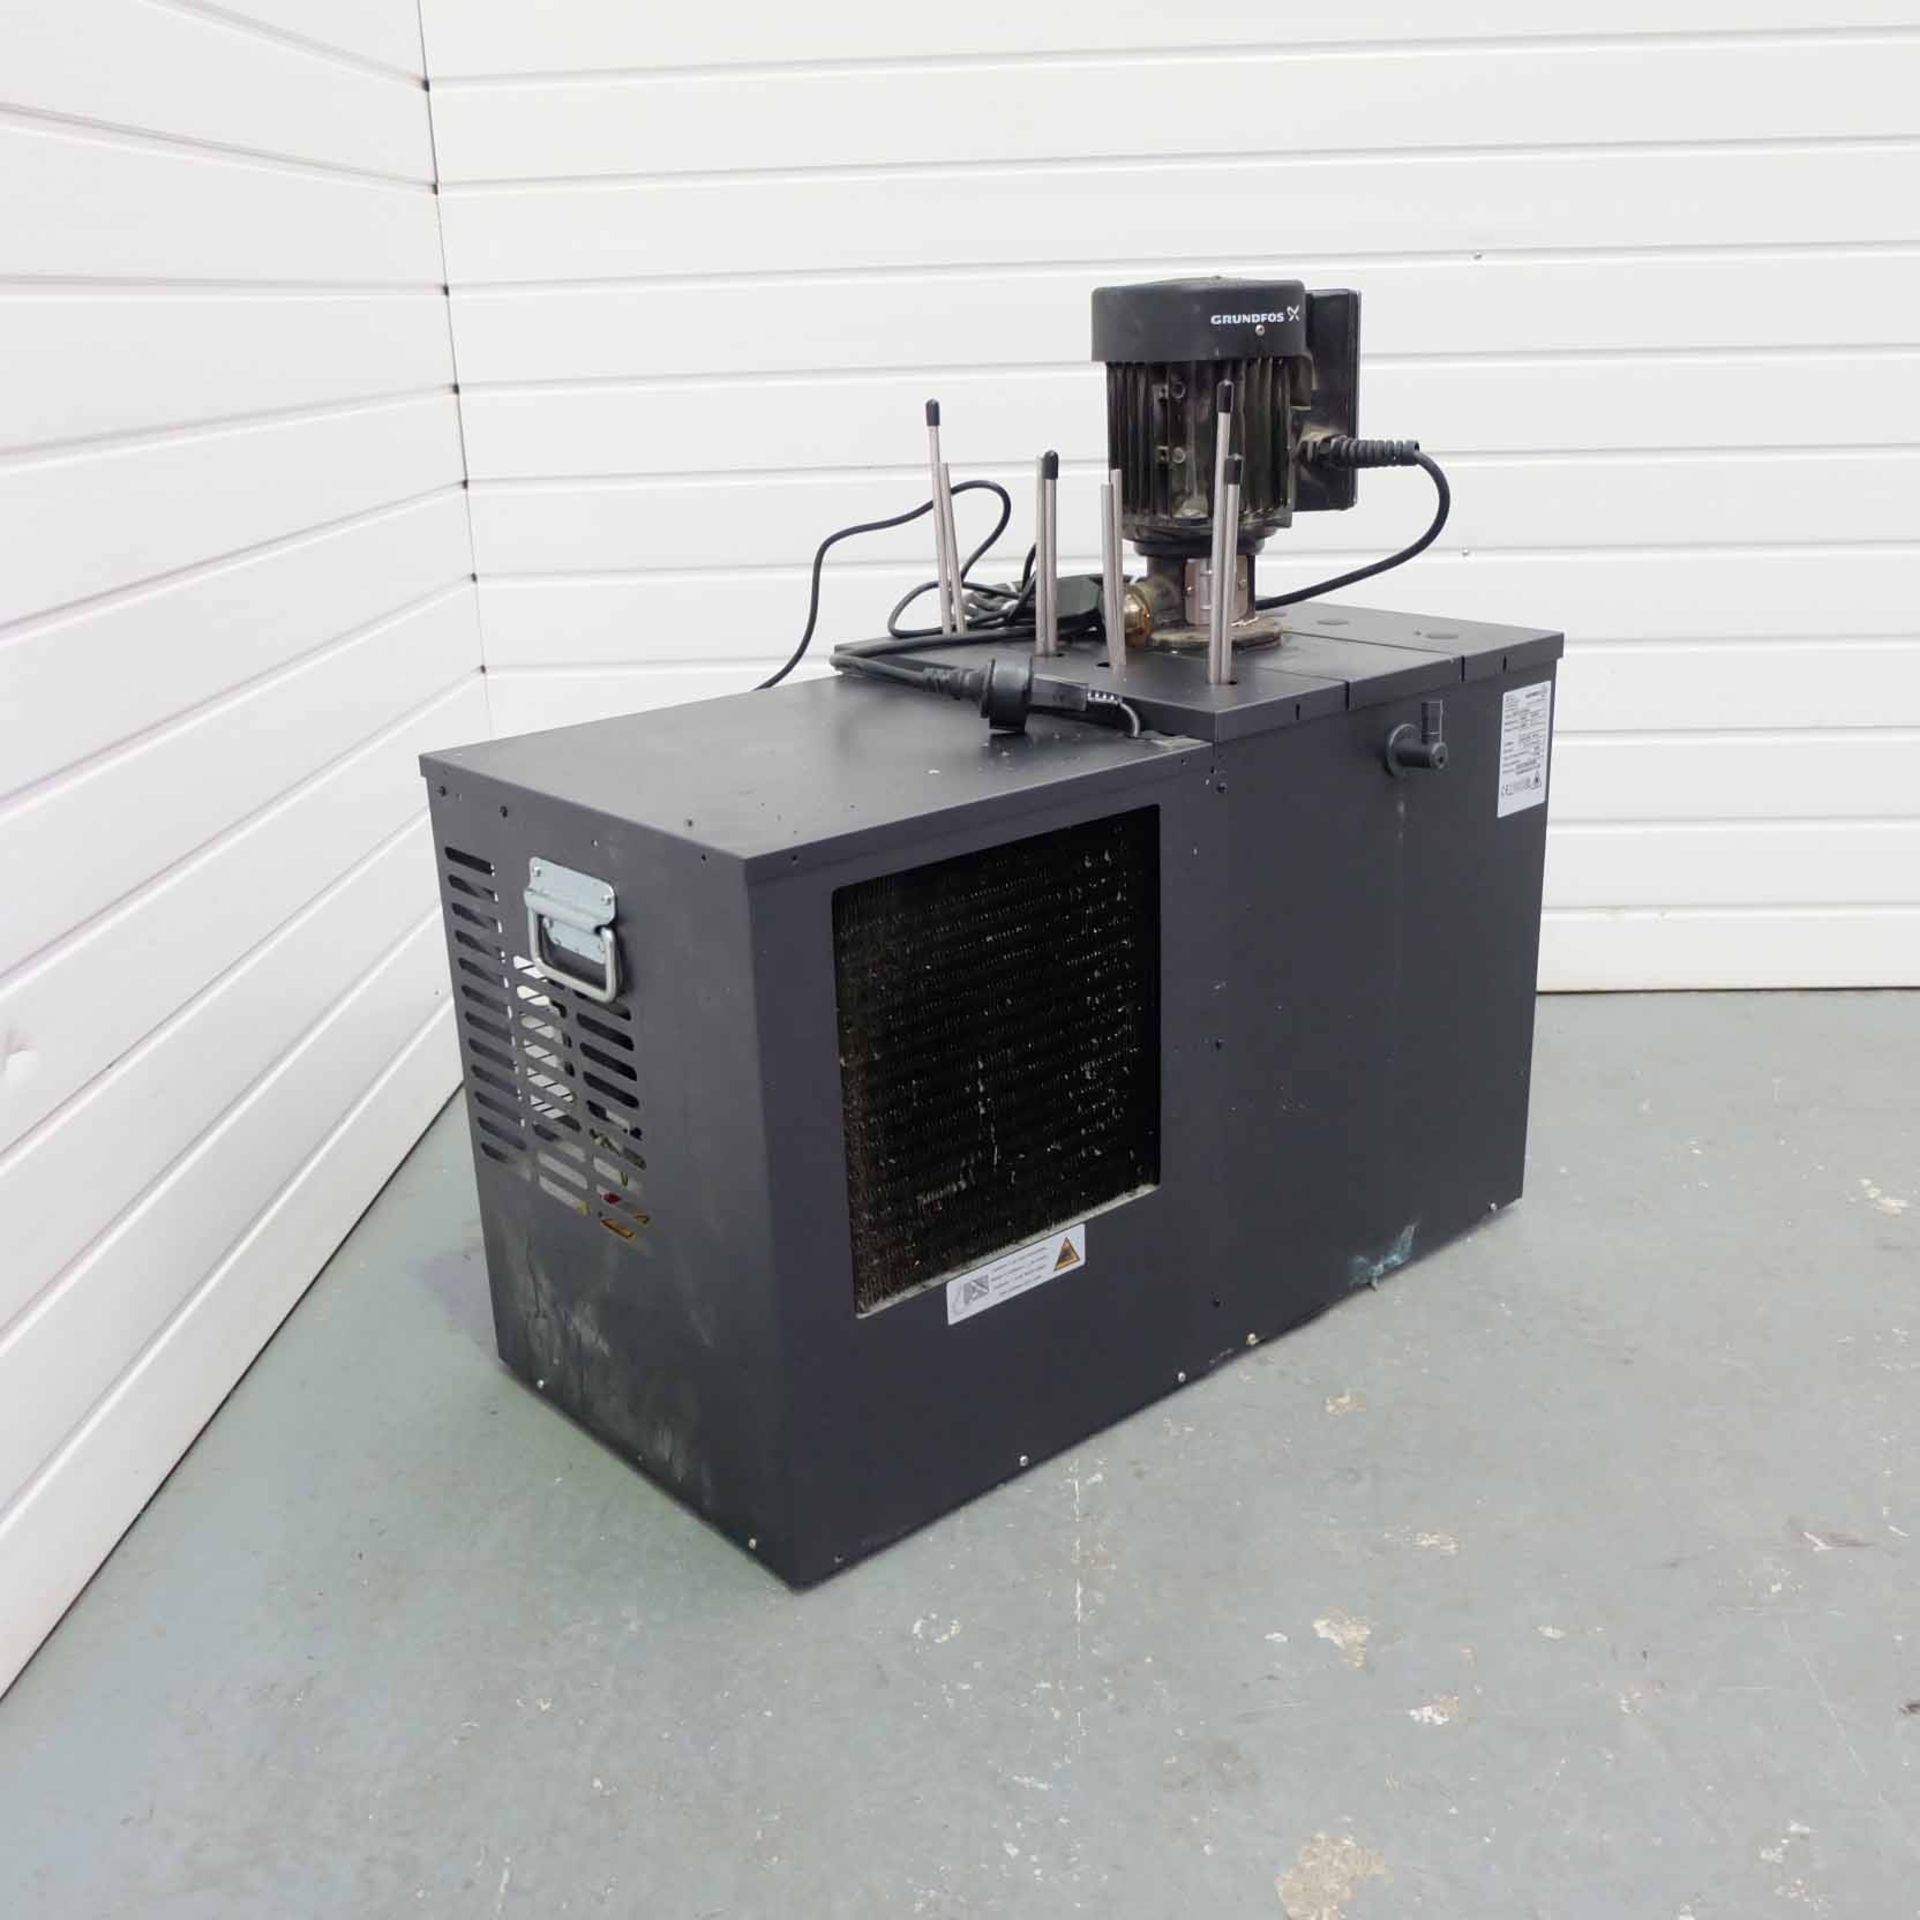 Gamko Cooler. Type BKG2-50/54L. Refridgerant R290 150GR. Voltage 240V. Test Pressure 13 Bar. Year 20 - Image 2 of 4